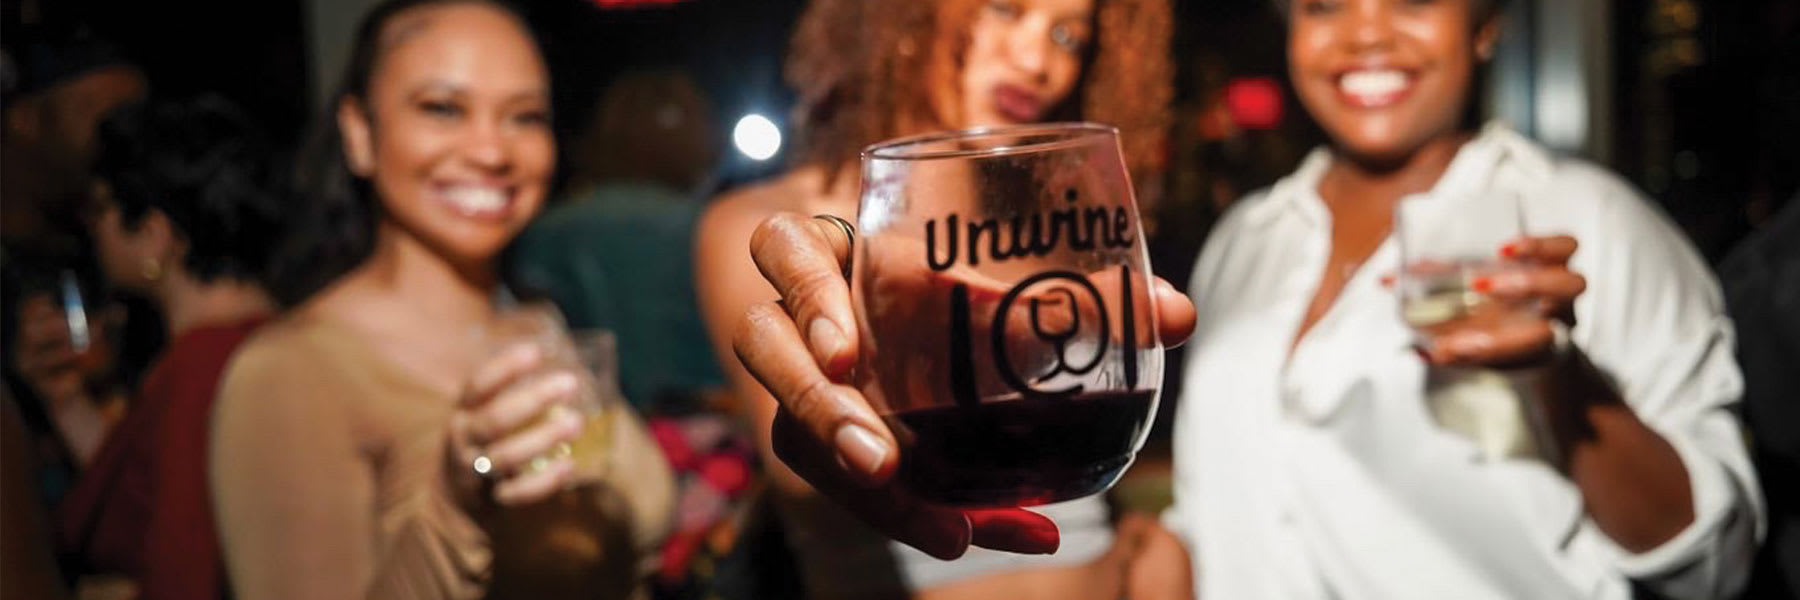 Unwine Karaoke Wine Festival, Kings Theatre